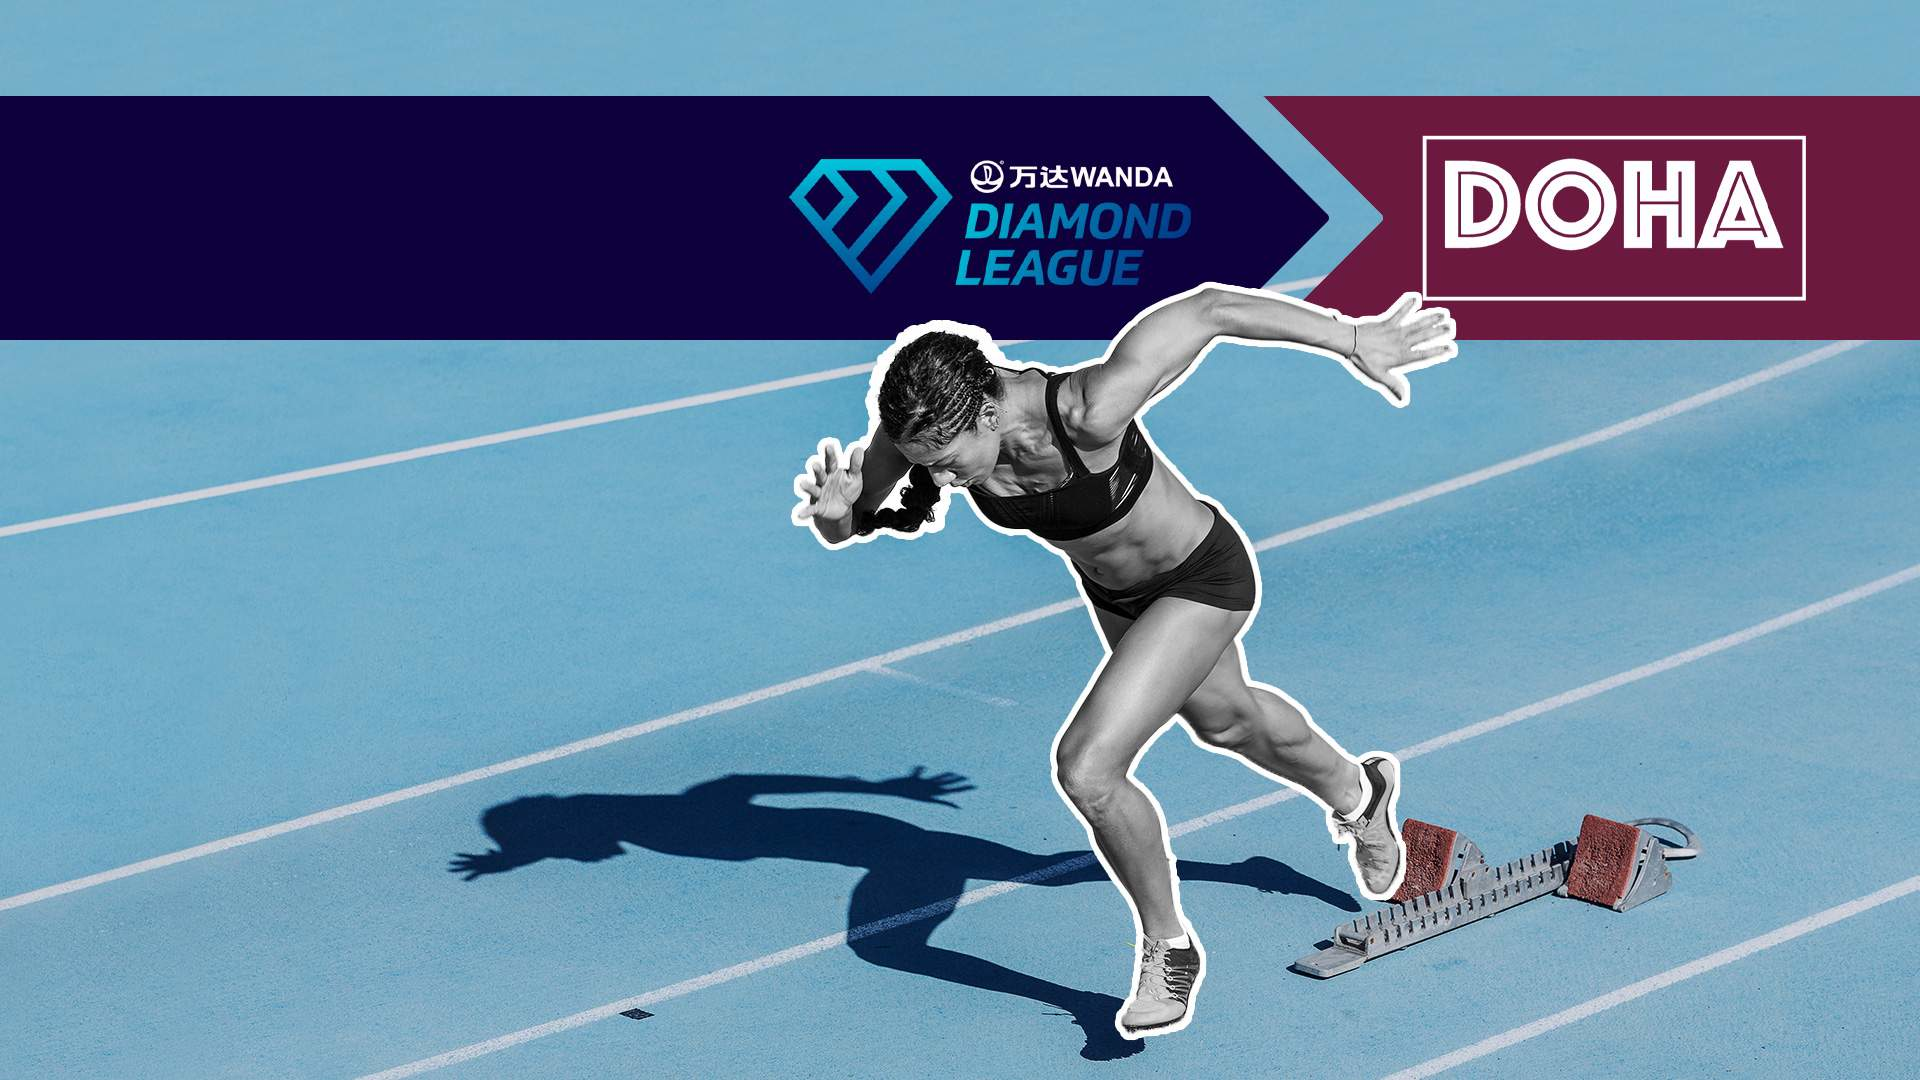 Wanda Diamond League. Doha (Qatar)